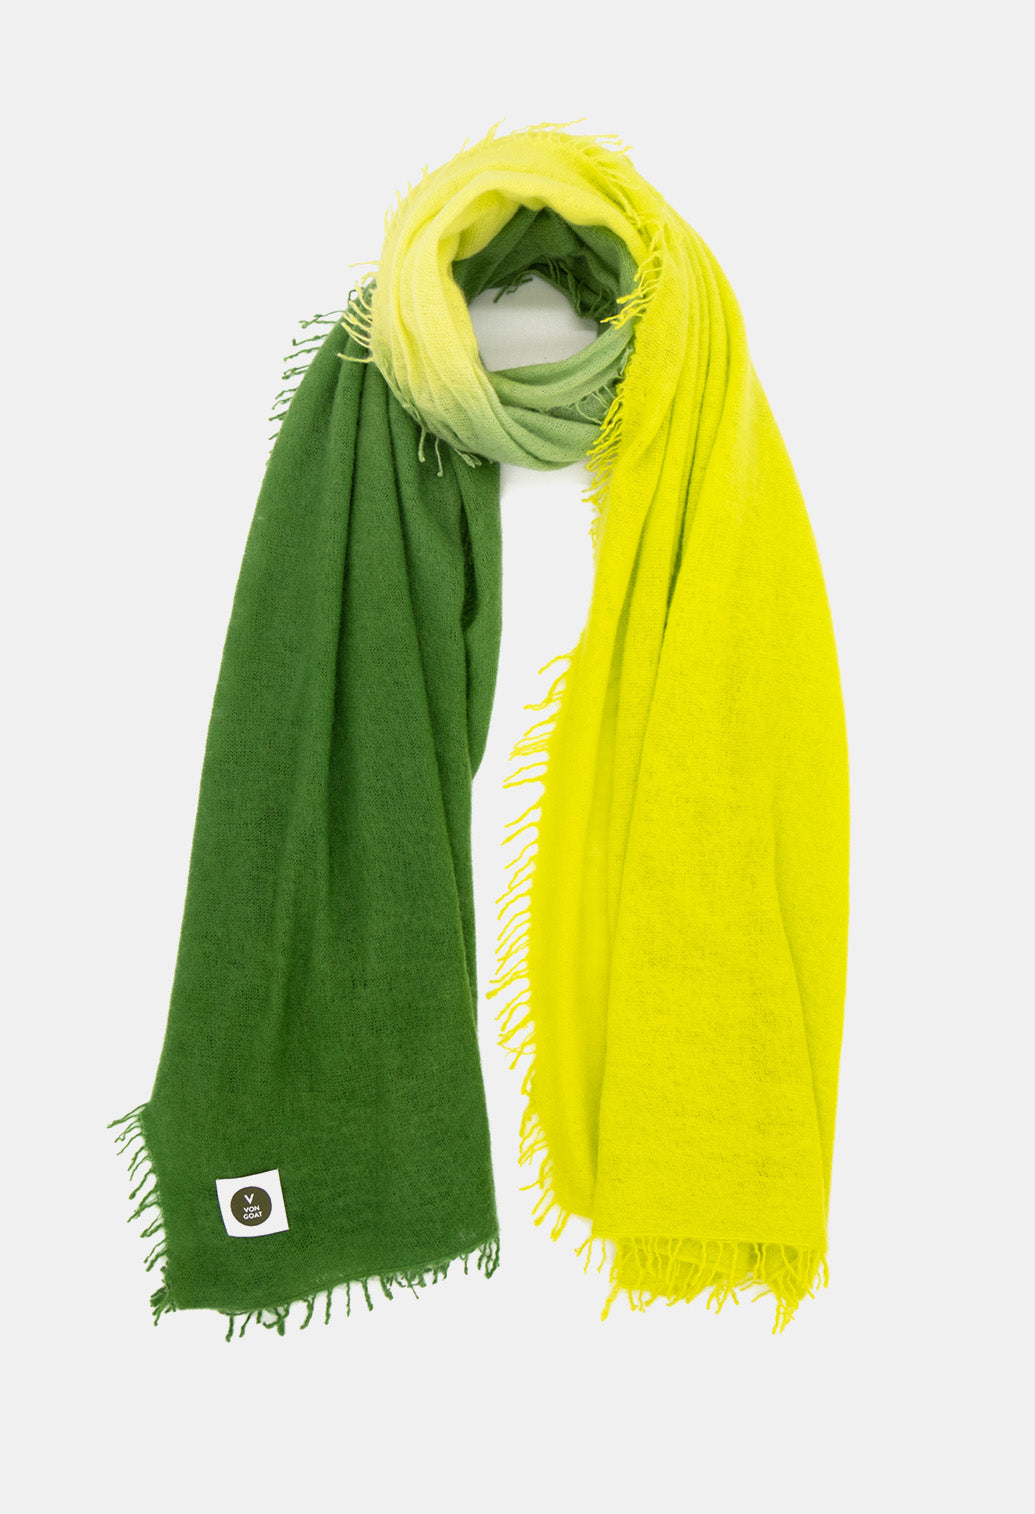 V Von Goat Kaschmir-Schal mit Fransen im Tiedye-Stil in den Farben Grün und Gelb aus reiner Cashmere-Wolle auf weißem Untergrund.